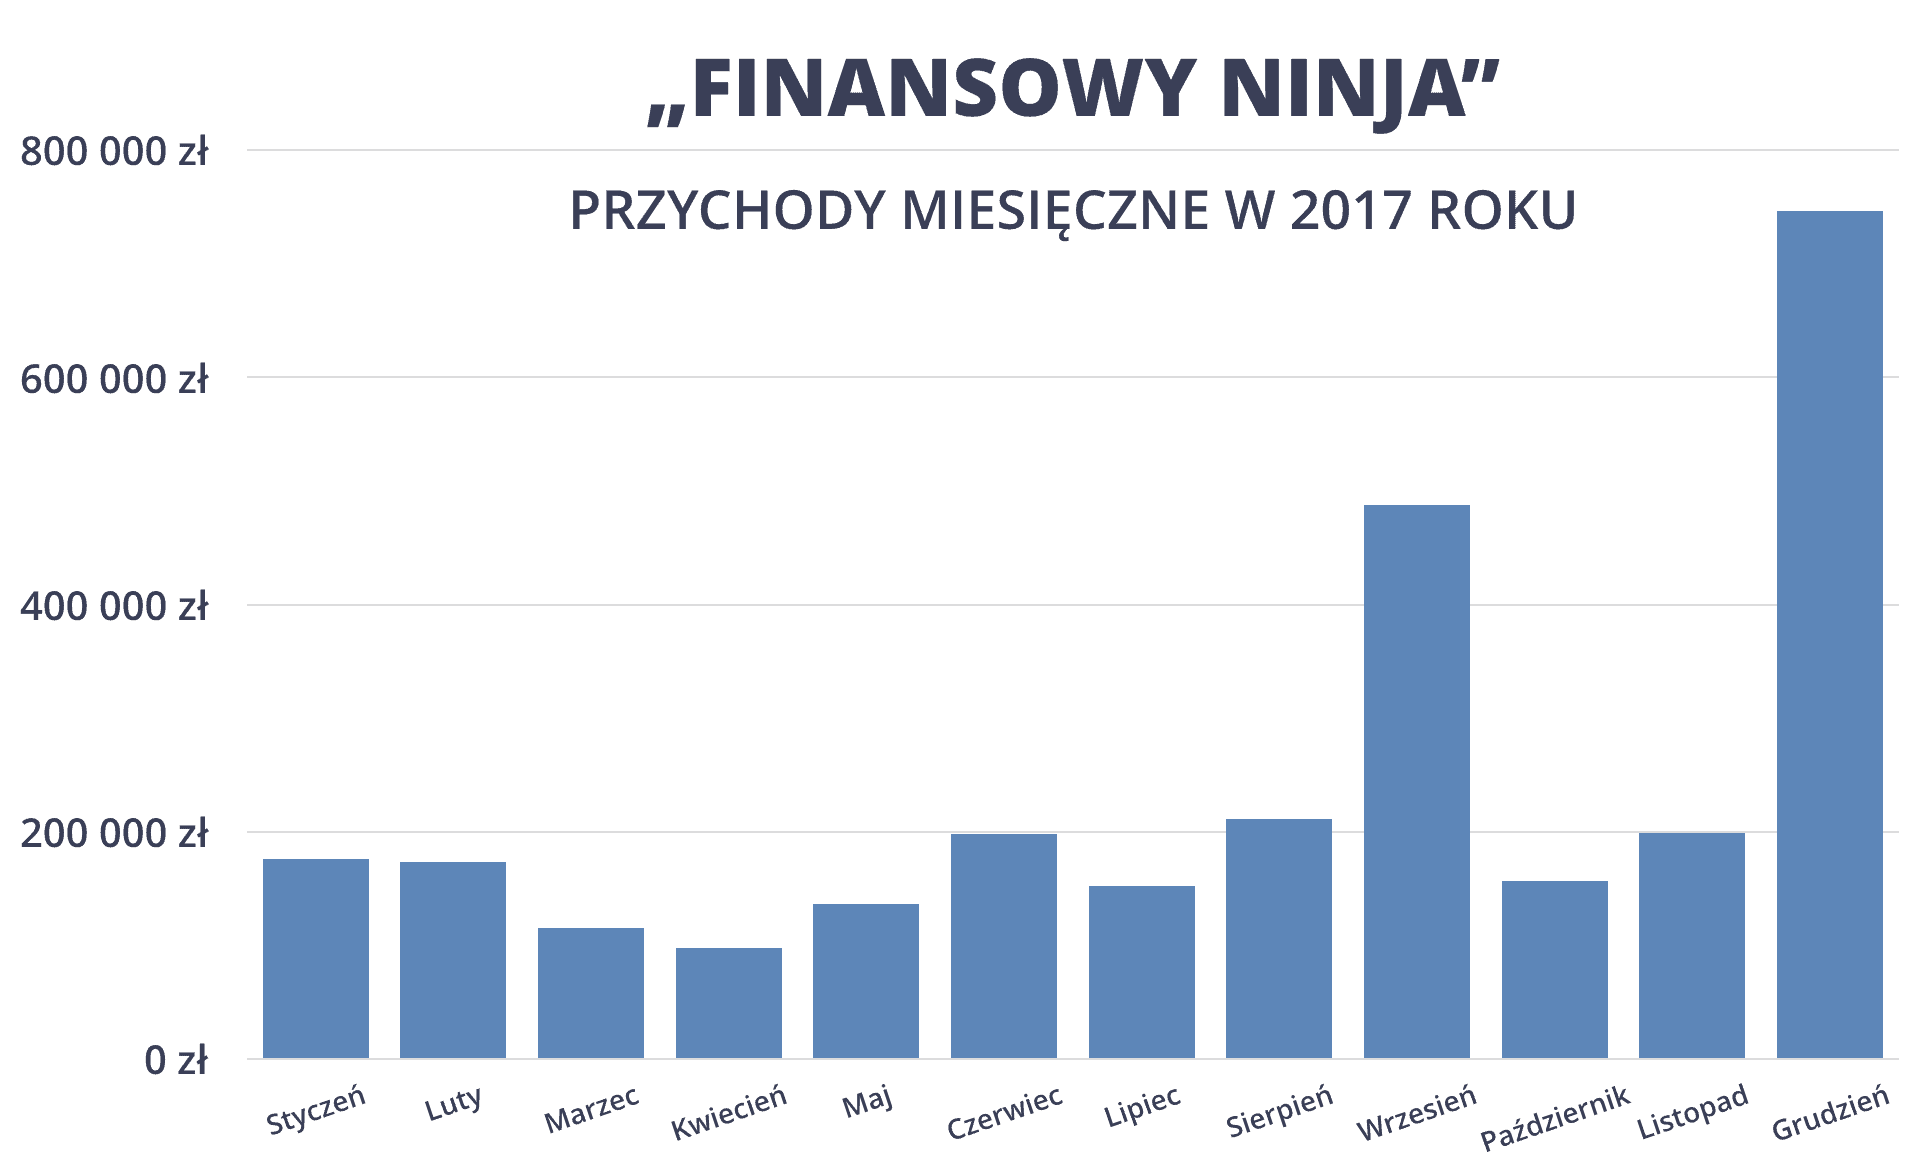 Przychody miesięczne Finansowy Ninja 2017